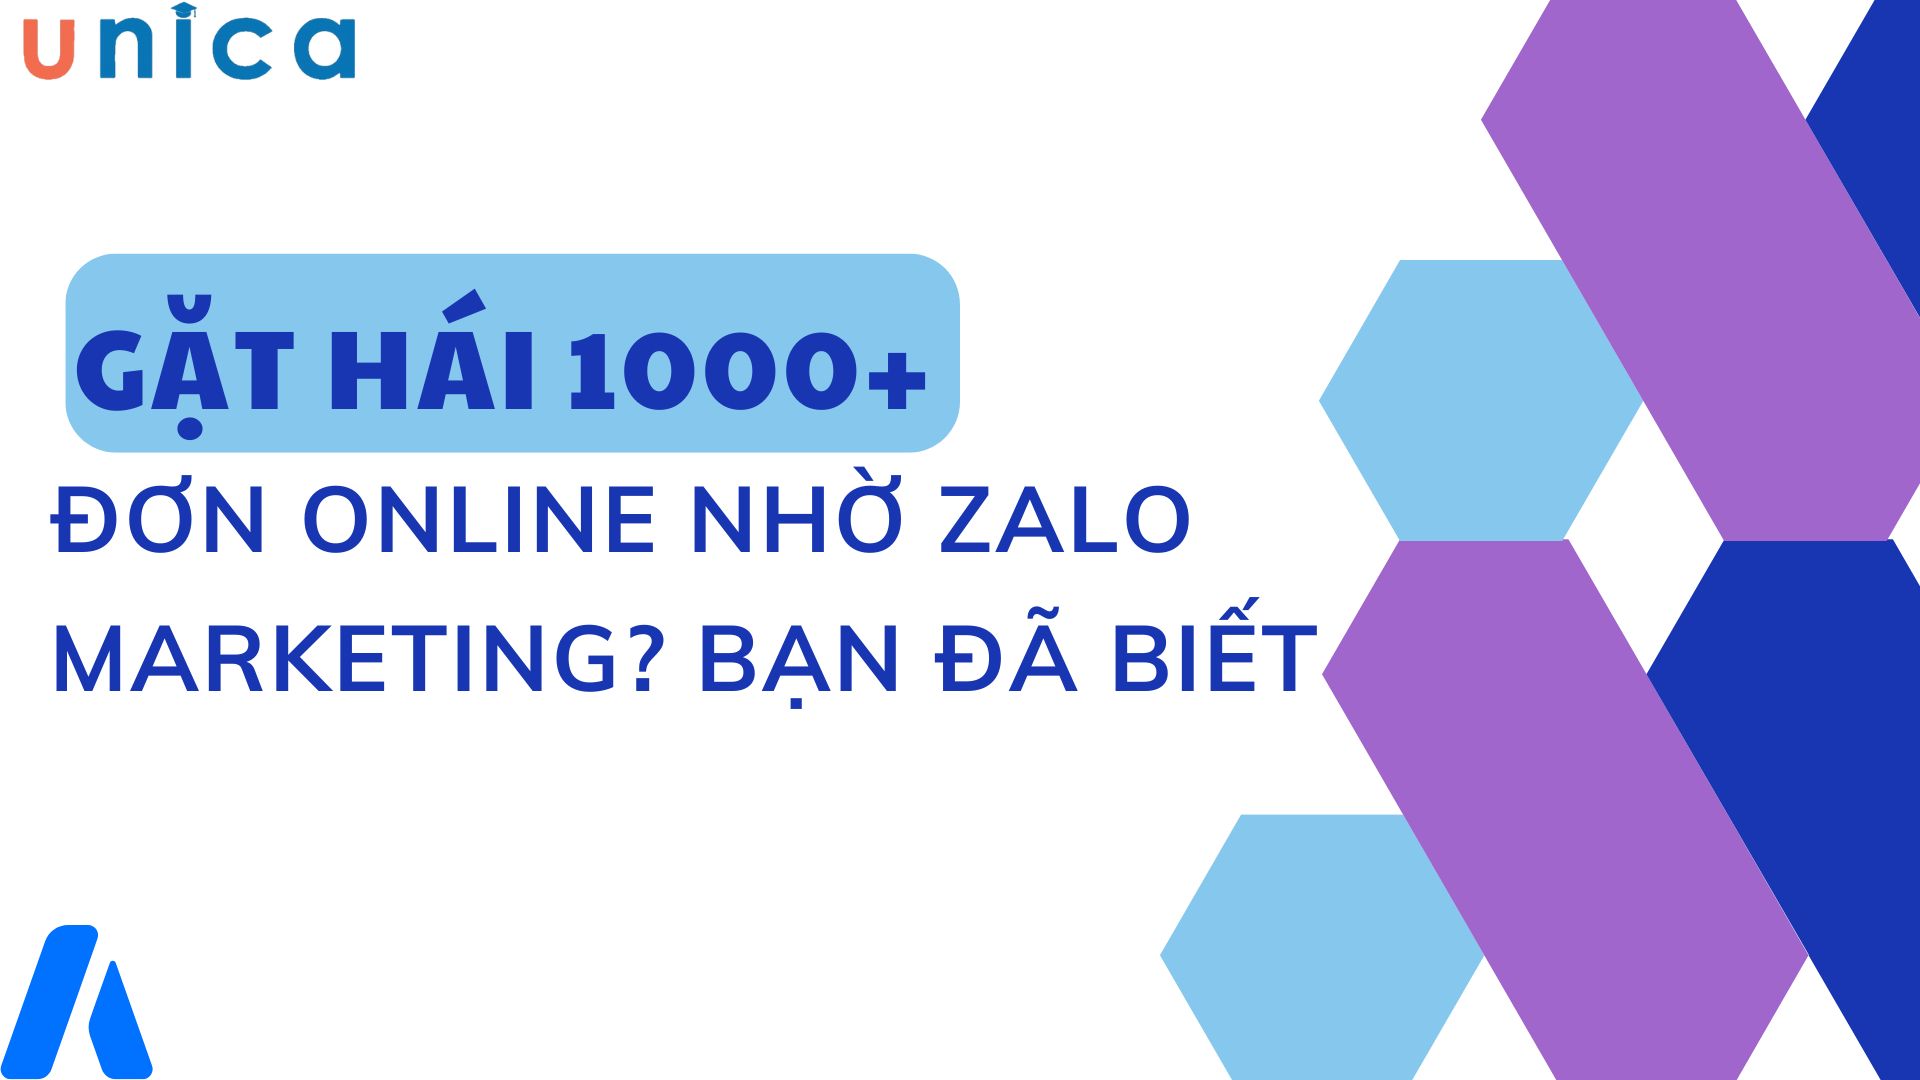 Phương Thanh đã gặt hái 1000+ đơn online nhờ Zalo Marketing như thế nào?